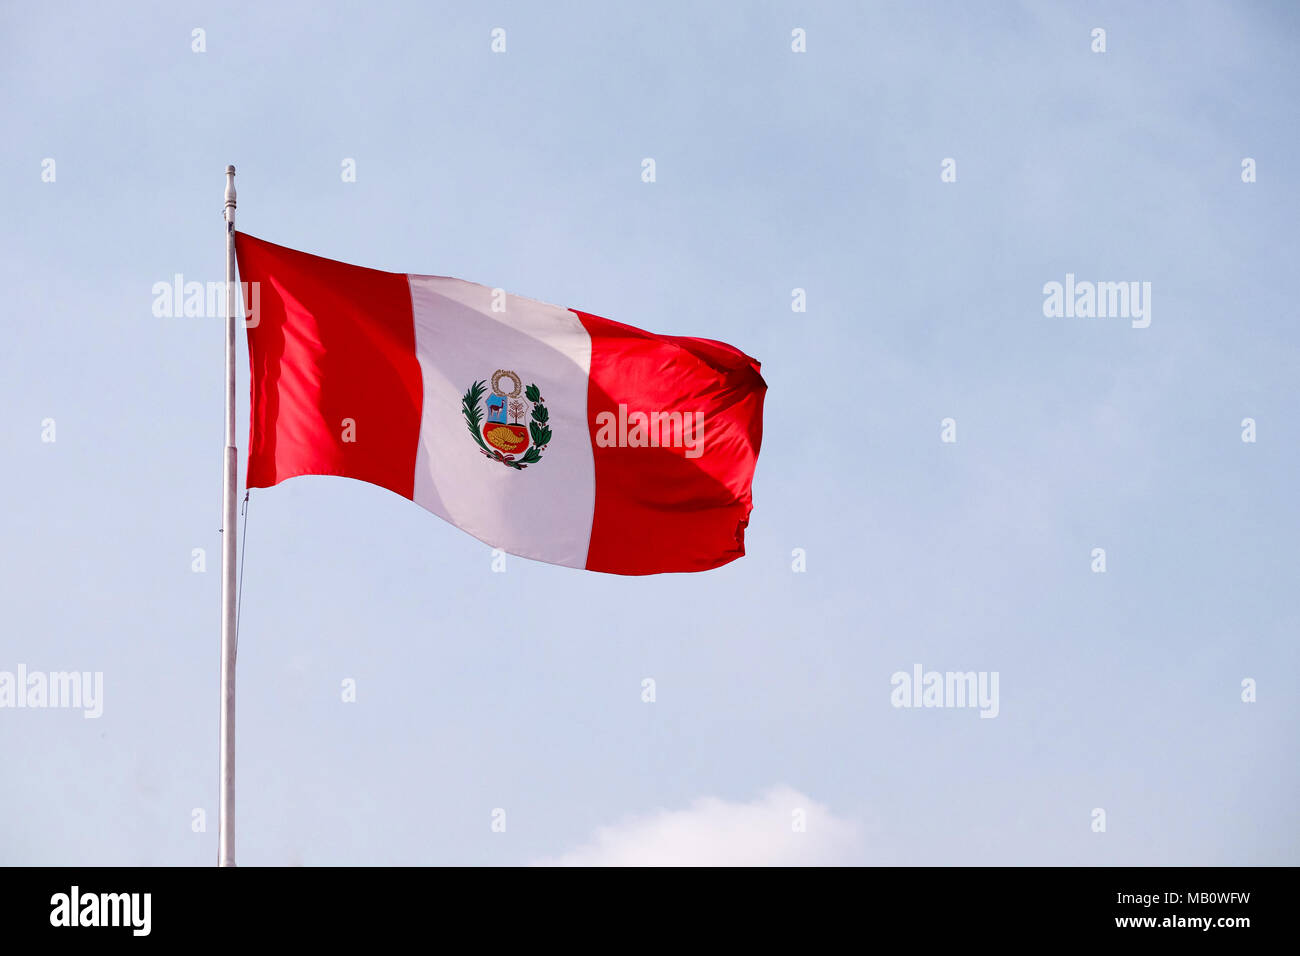 A large Peruvian flag waving in the wind in Peru. Stock Photo